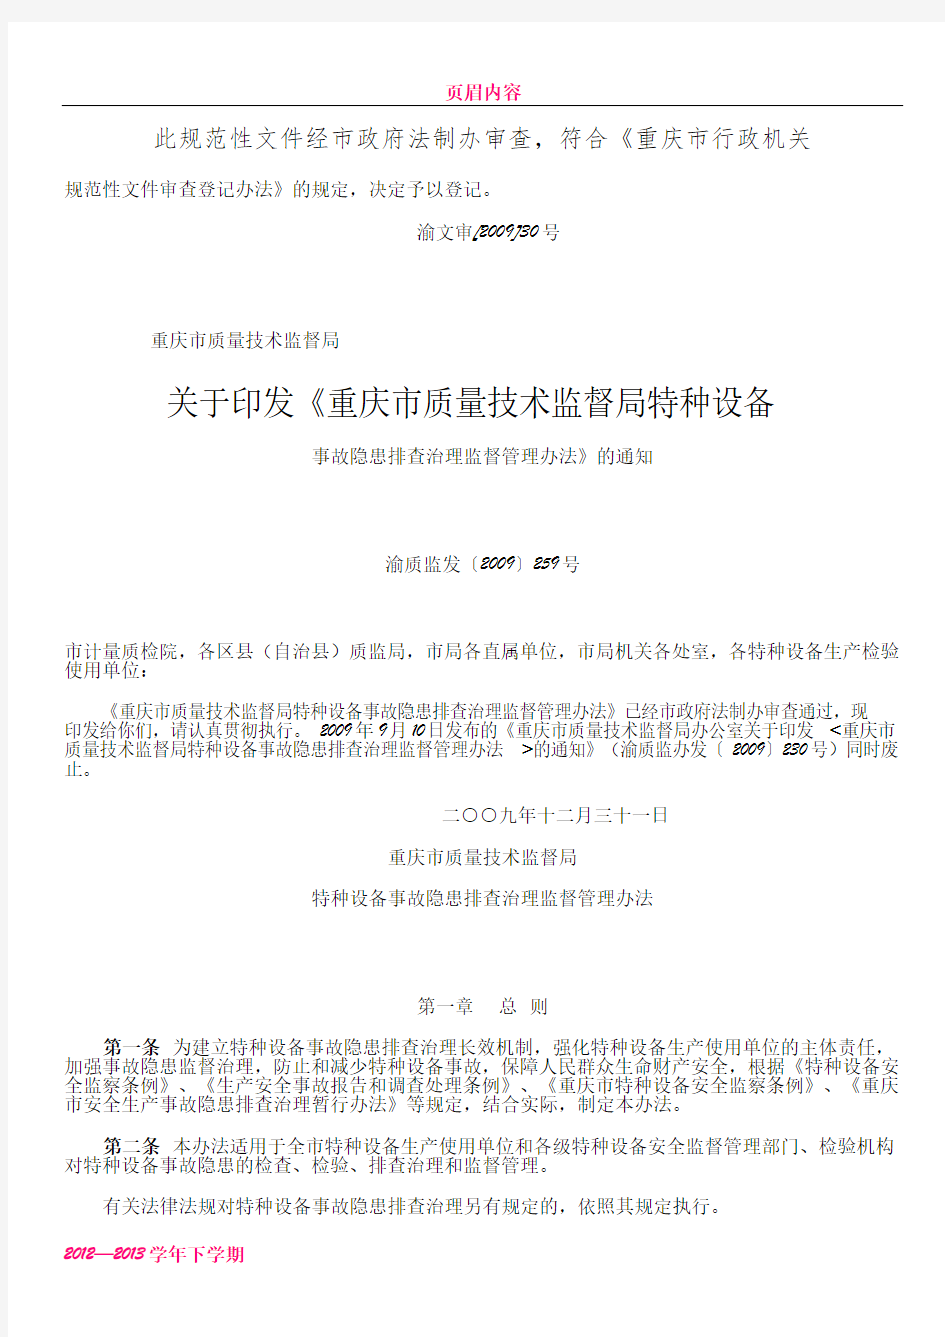 《重庆市质量技术监督局特种设备事故隐患排查治理监督管理办法》